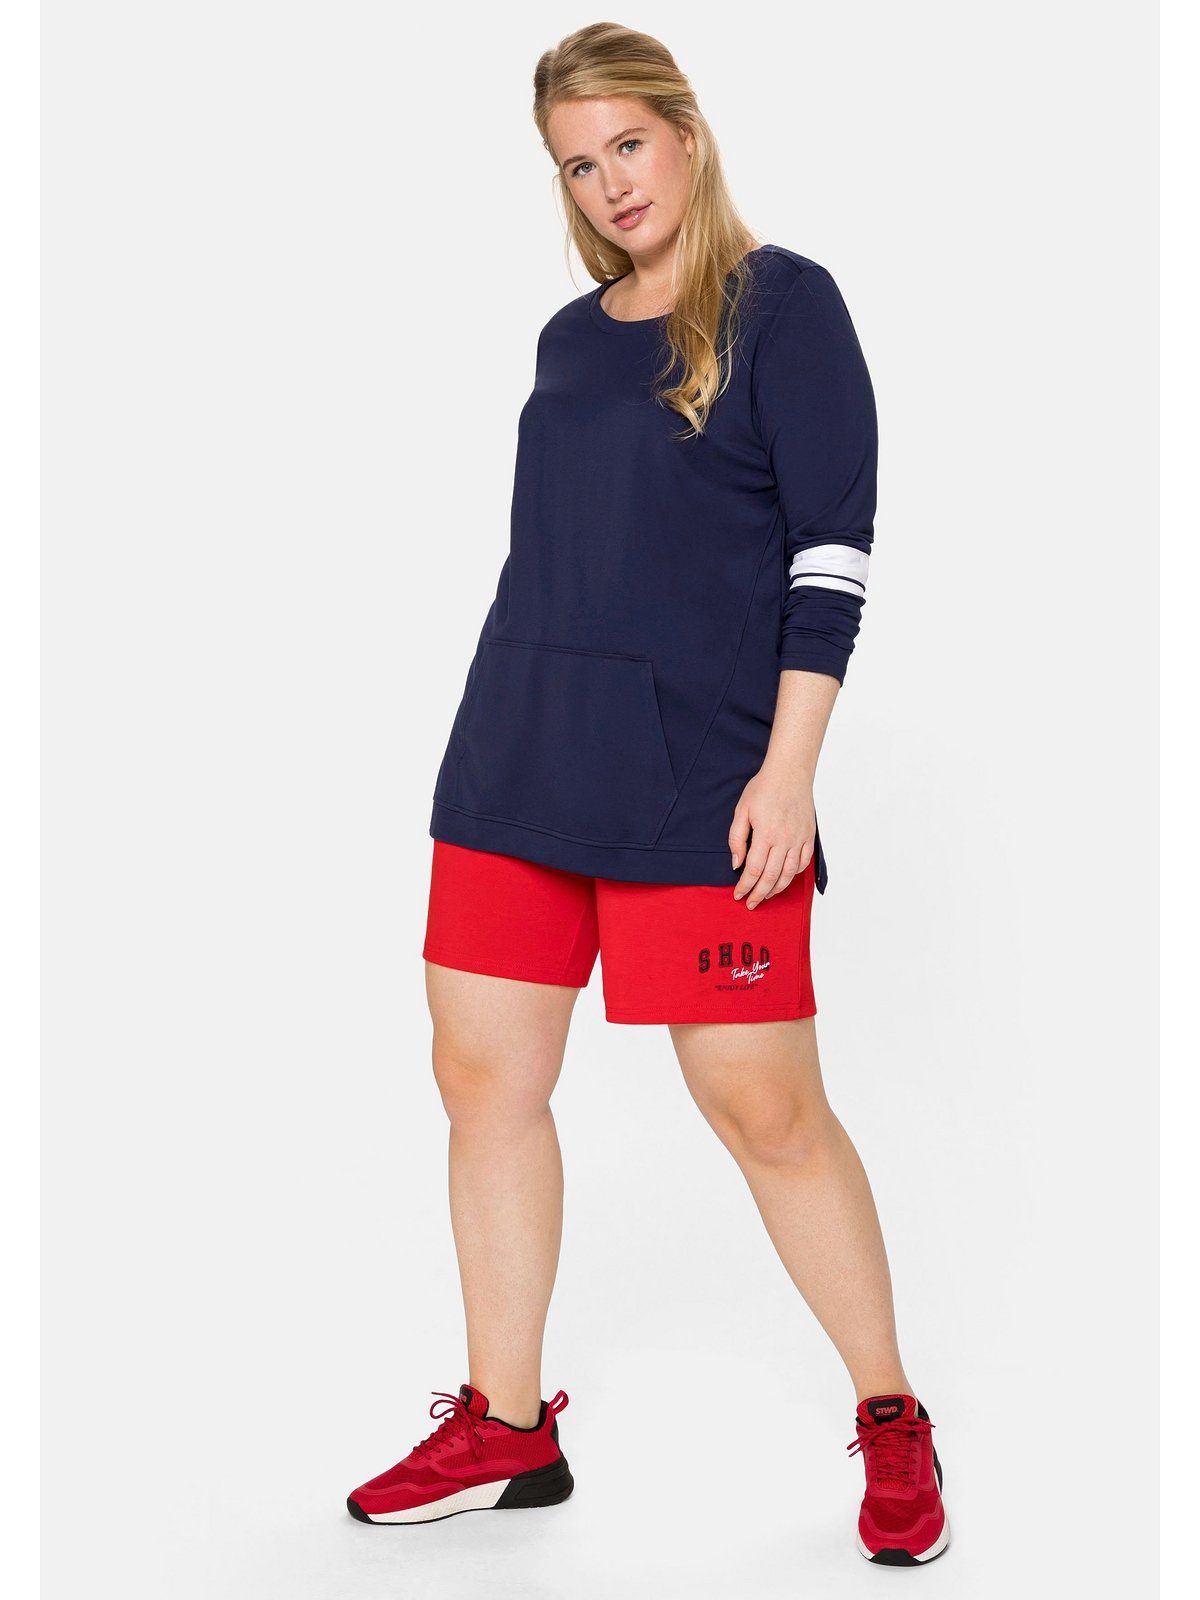 Damen Pullover Sheego Sweatshirt Sweatshirt aus Funktionsmaterial, mit Kängurutasche